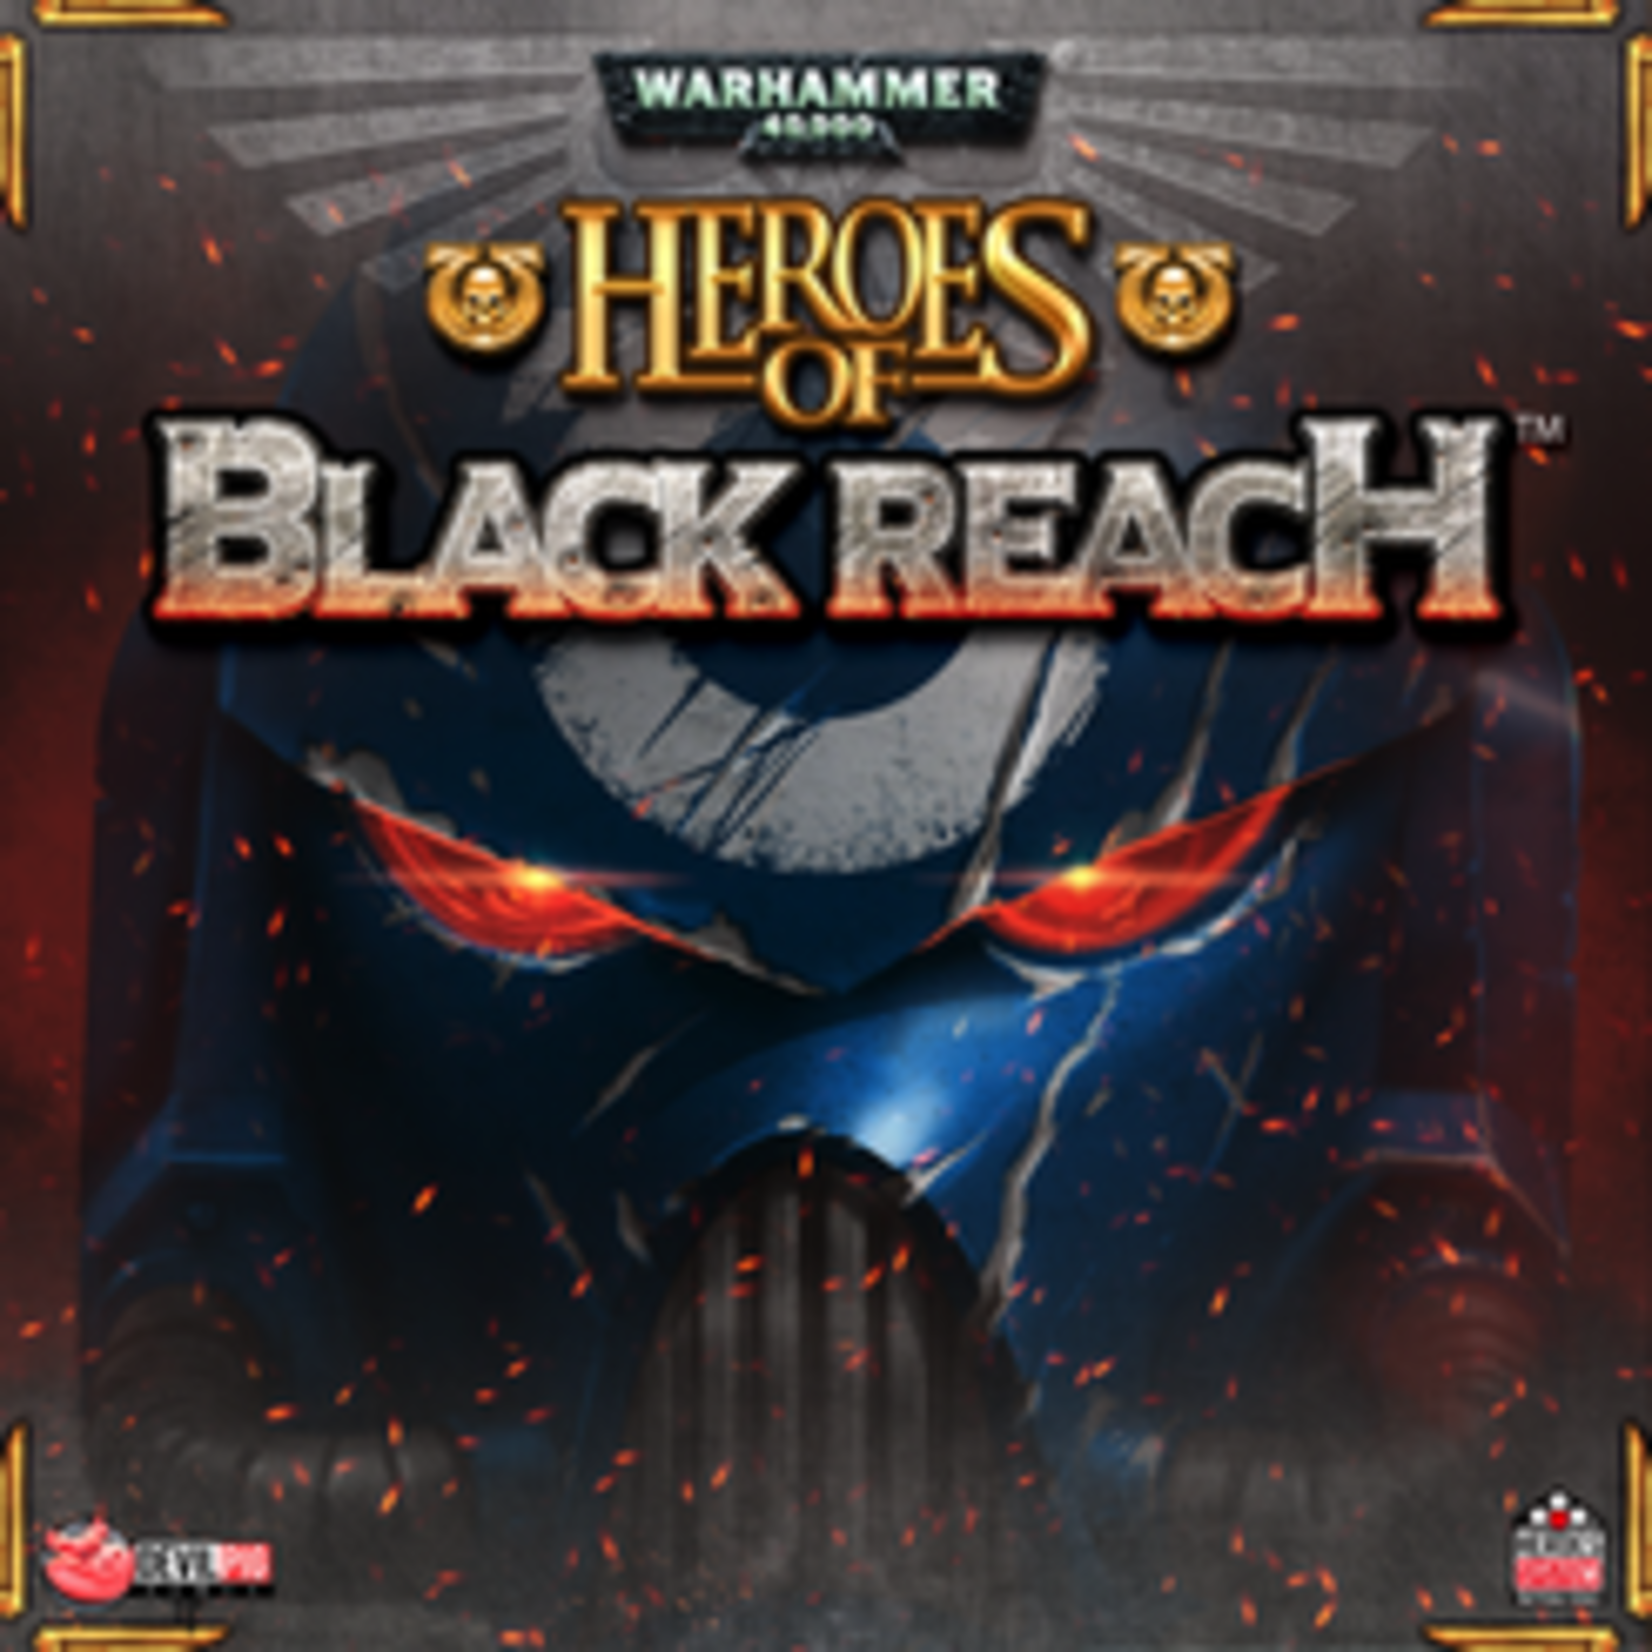 Warhammer 40,000 Heroes of Black Reach